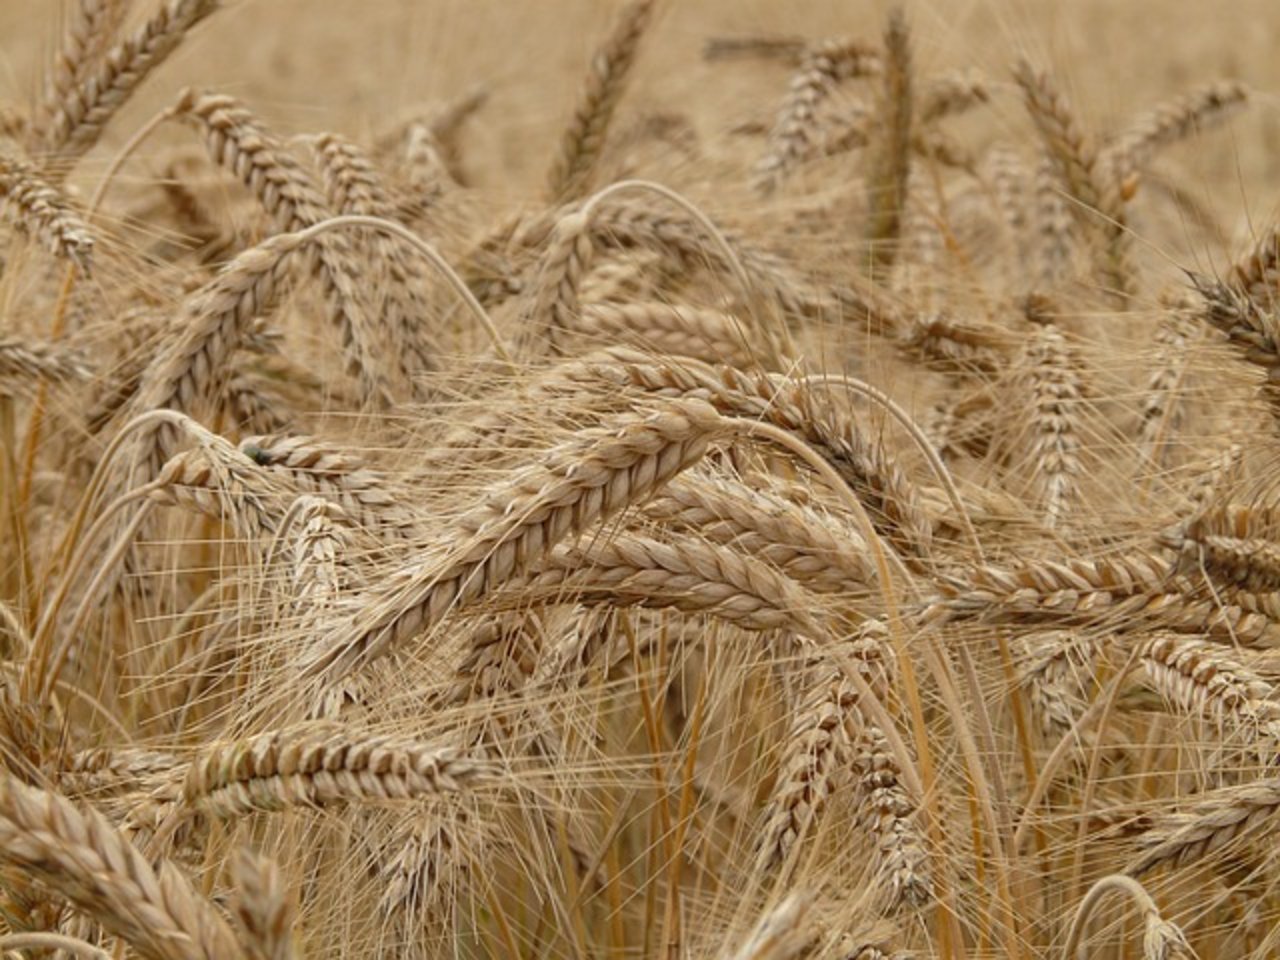 Deutschland erwartet solide Getreideernte. (Bild pixabay)